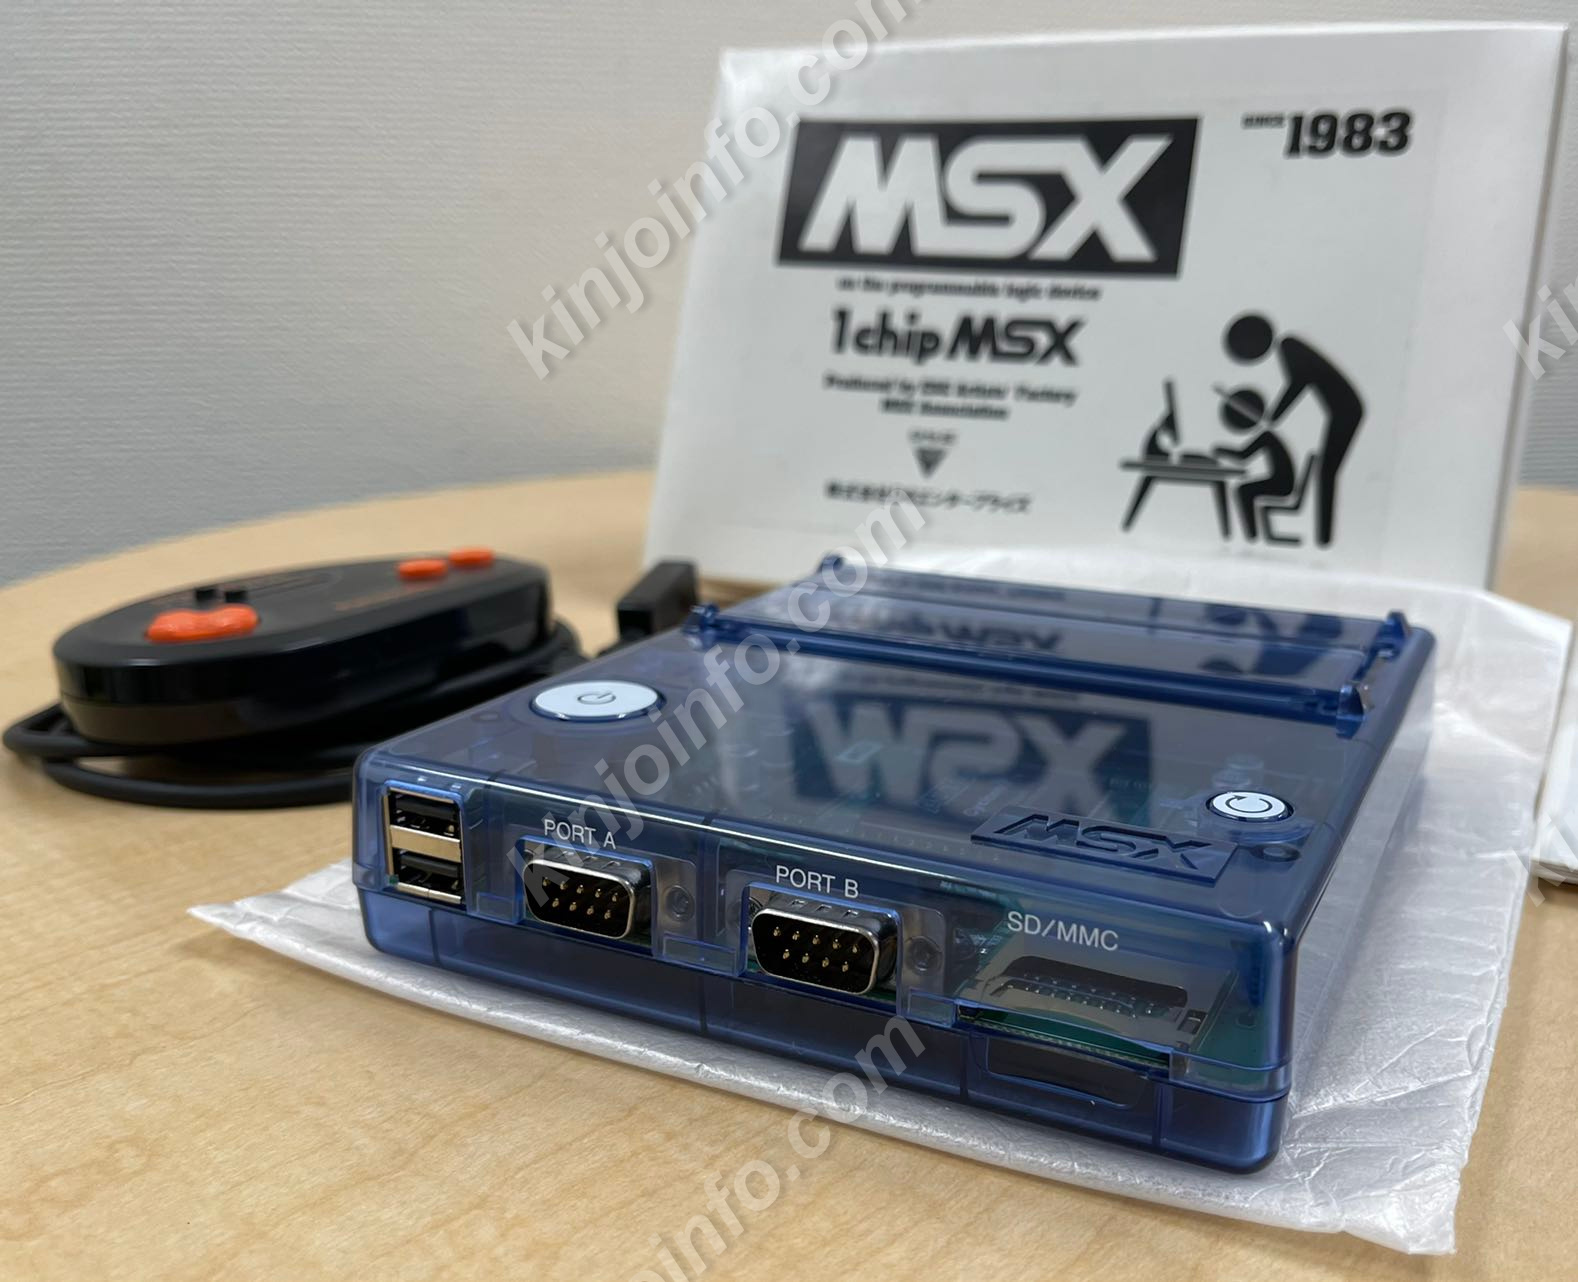 1チップMSX 1chip msx本体【美品・MSX日本版】